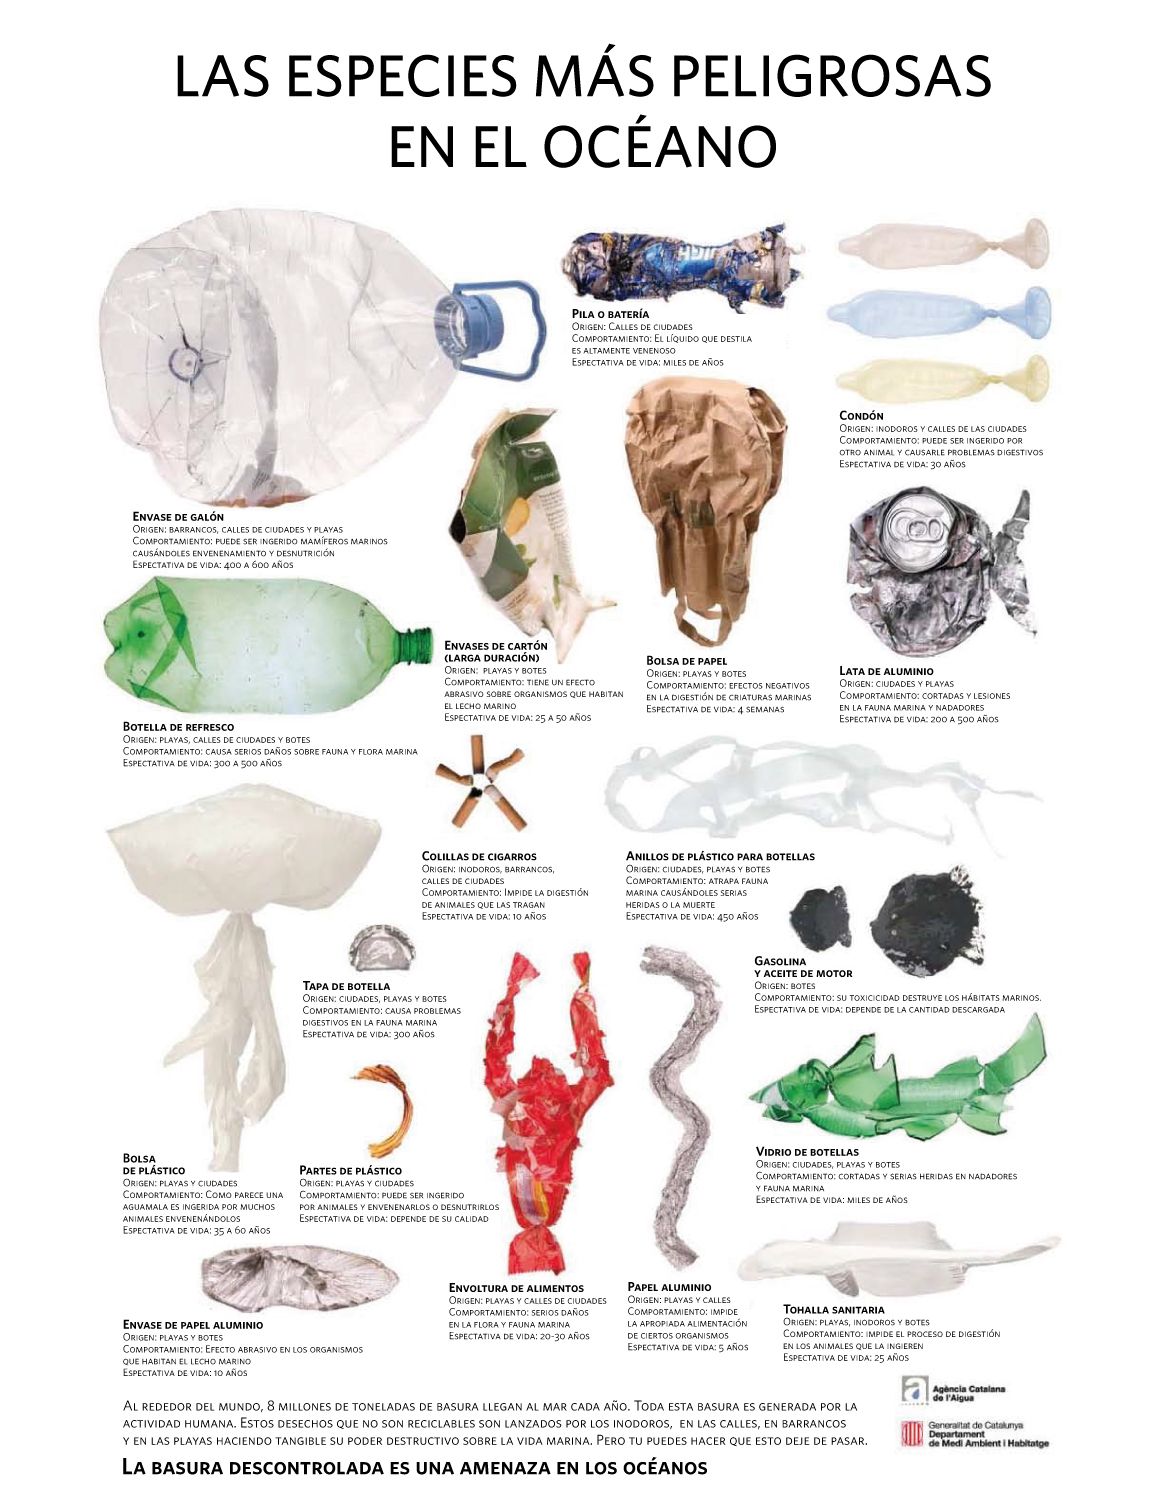 Las especies más peligrosas del océano (infografía)